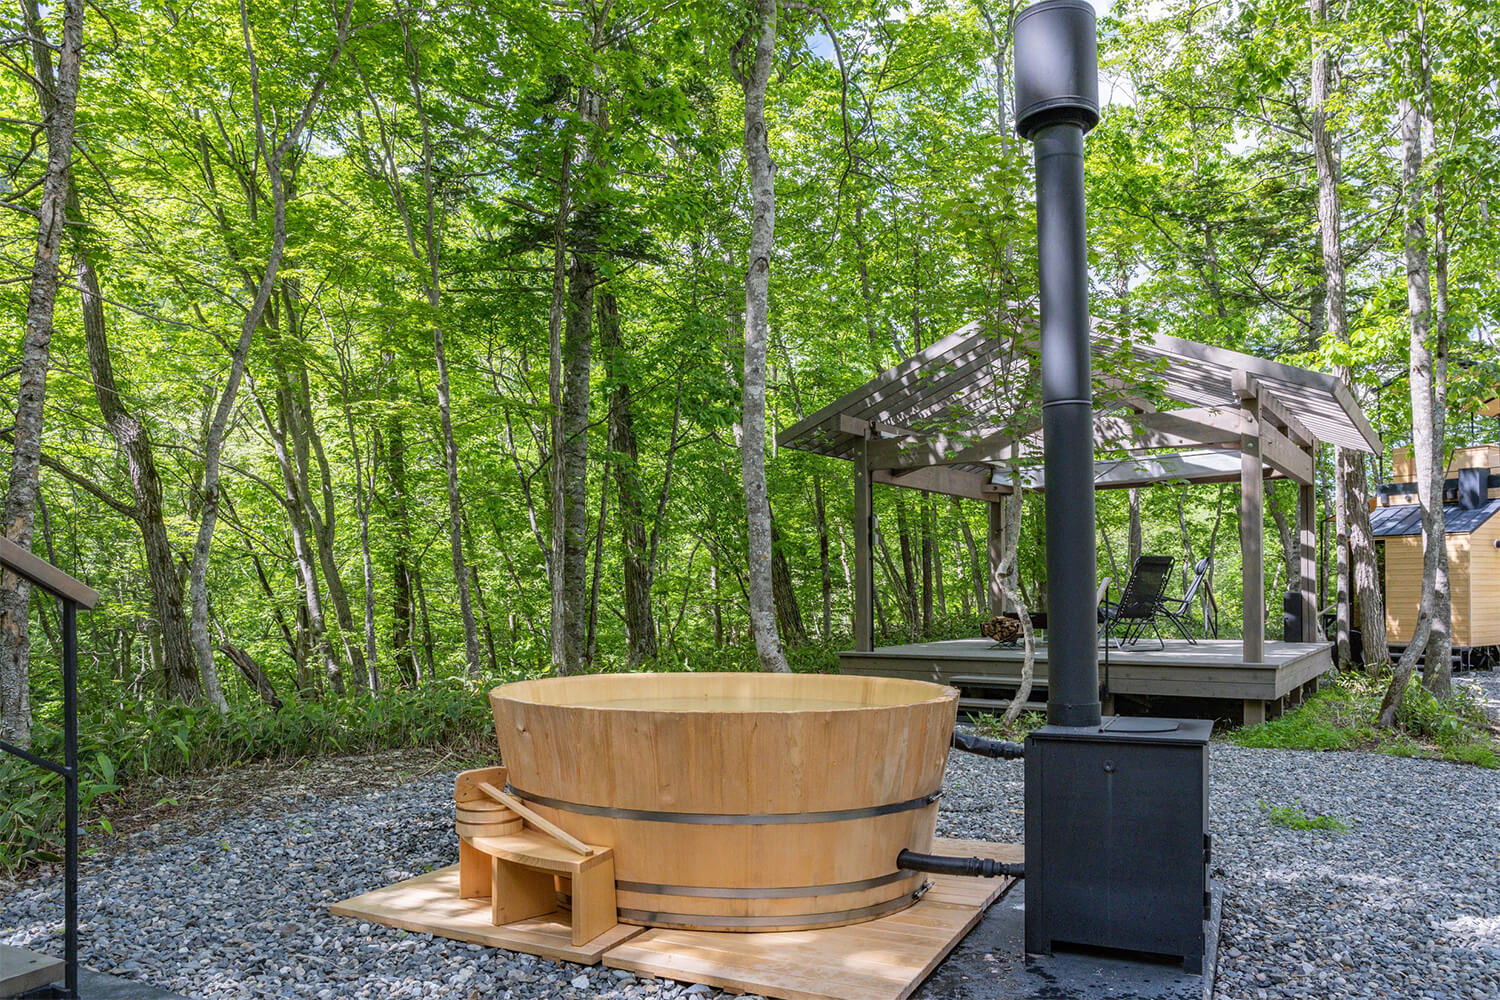 桶職人・中川周士氏によって製作された薪式の露天風呂浴槽